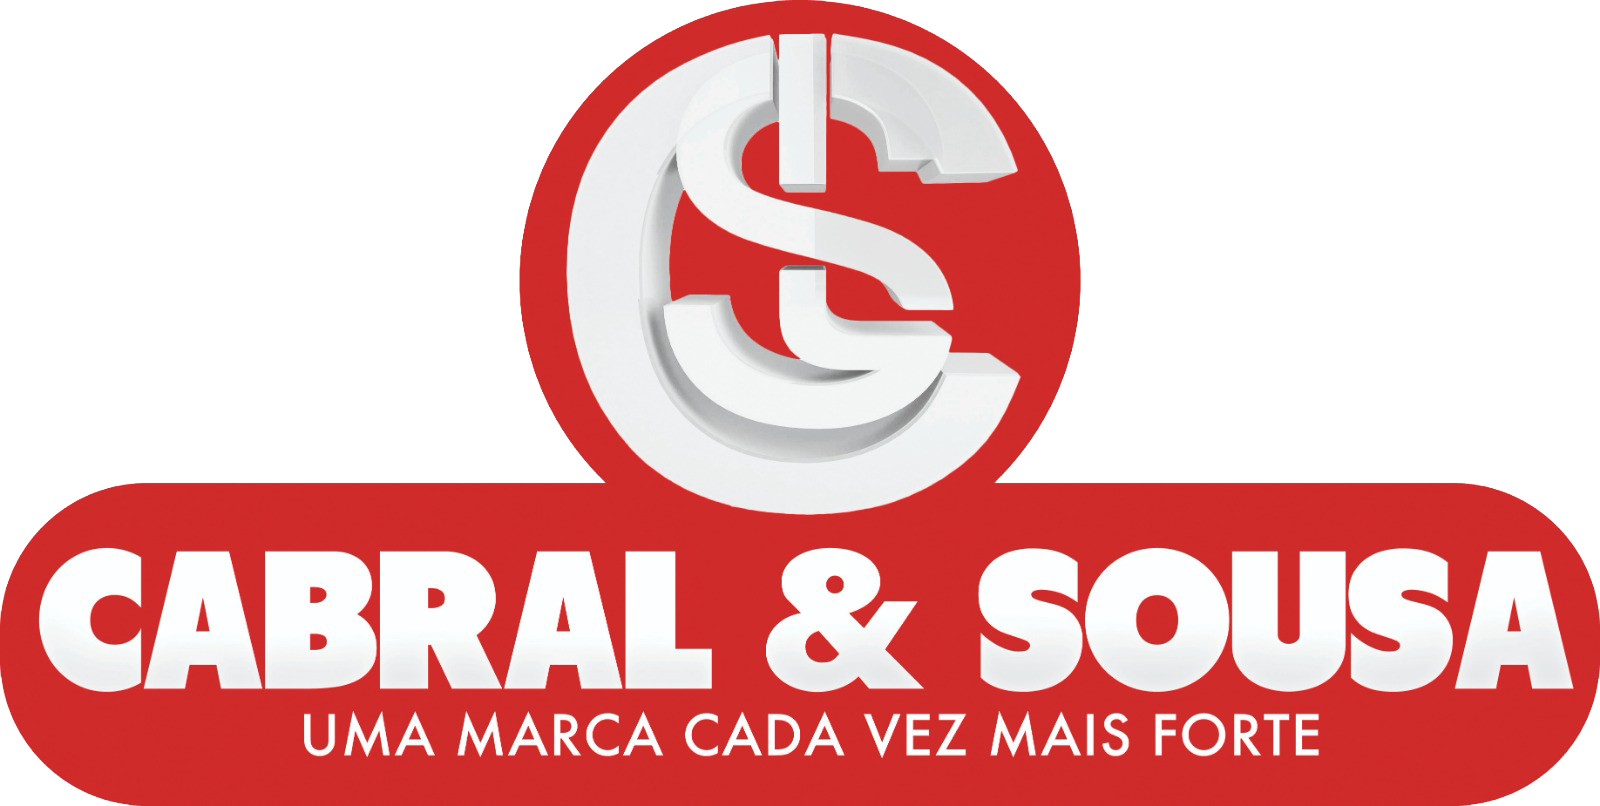 Cabral e Sousa